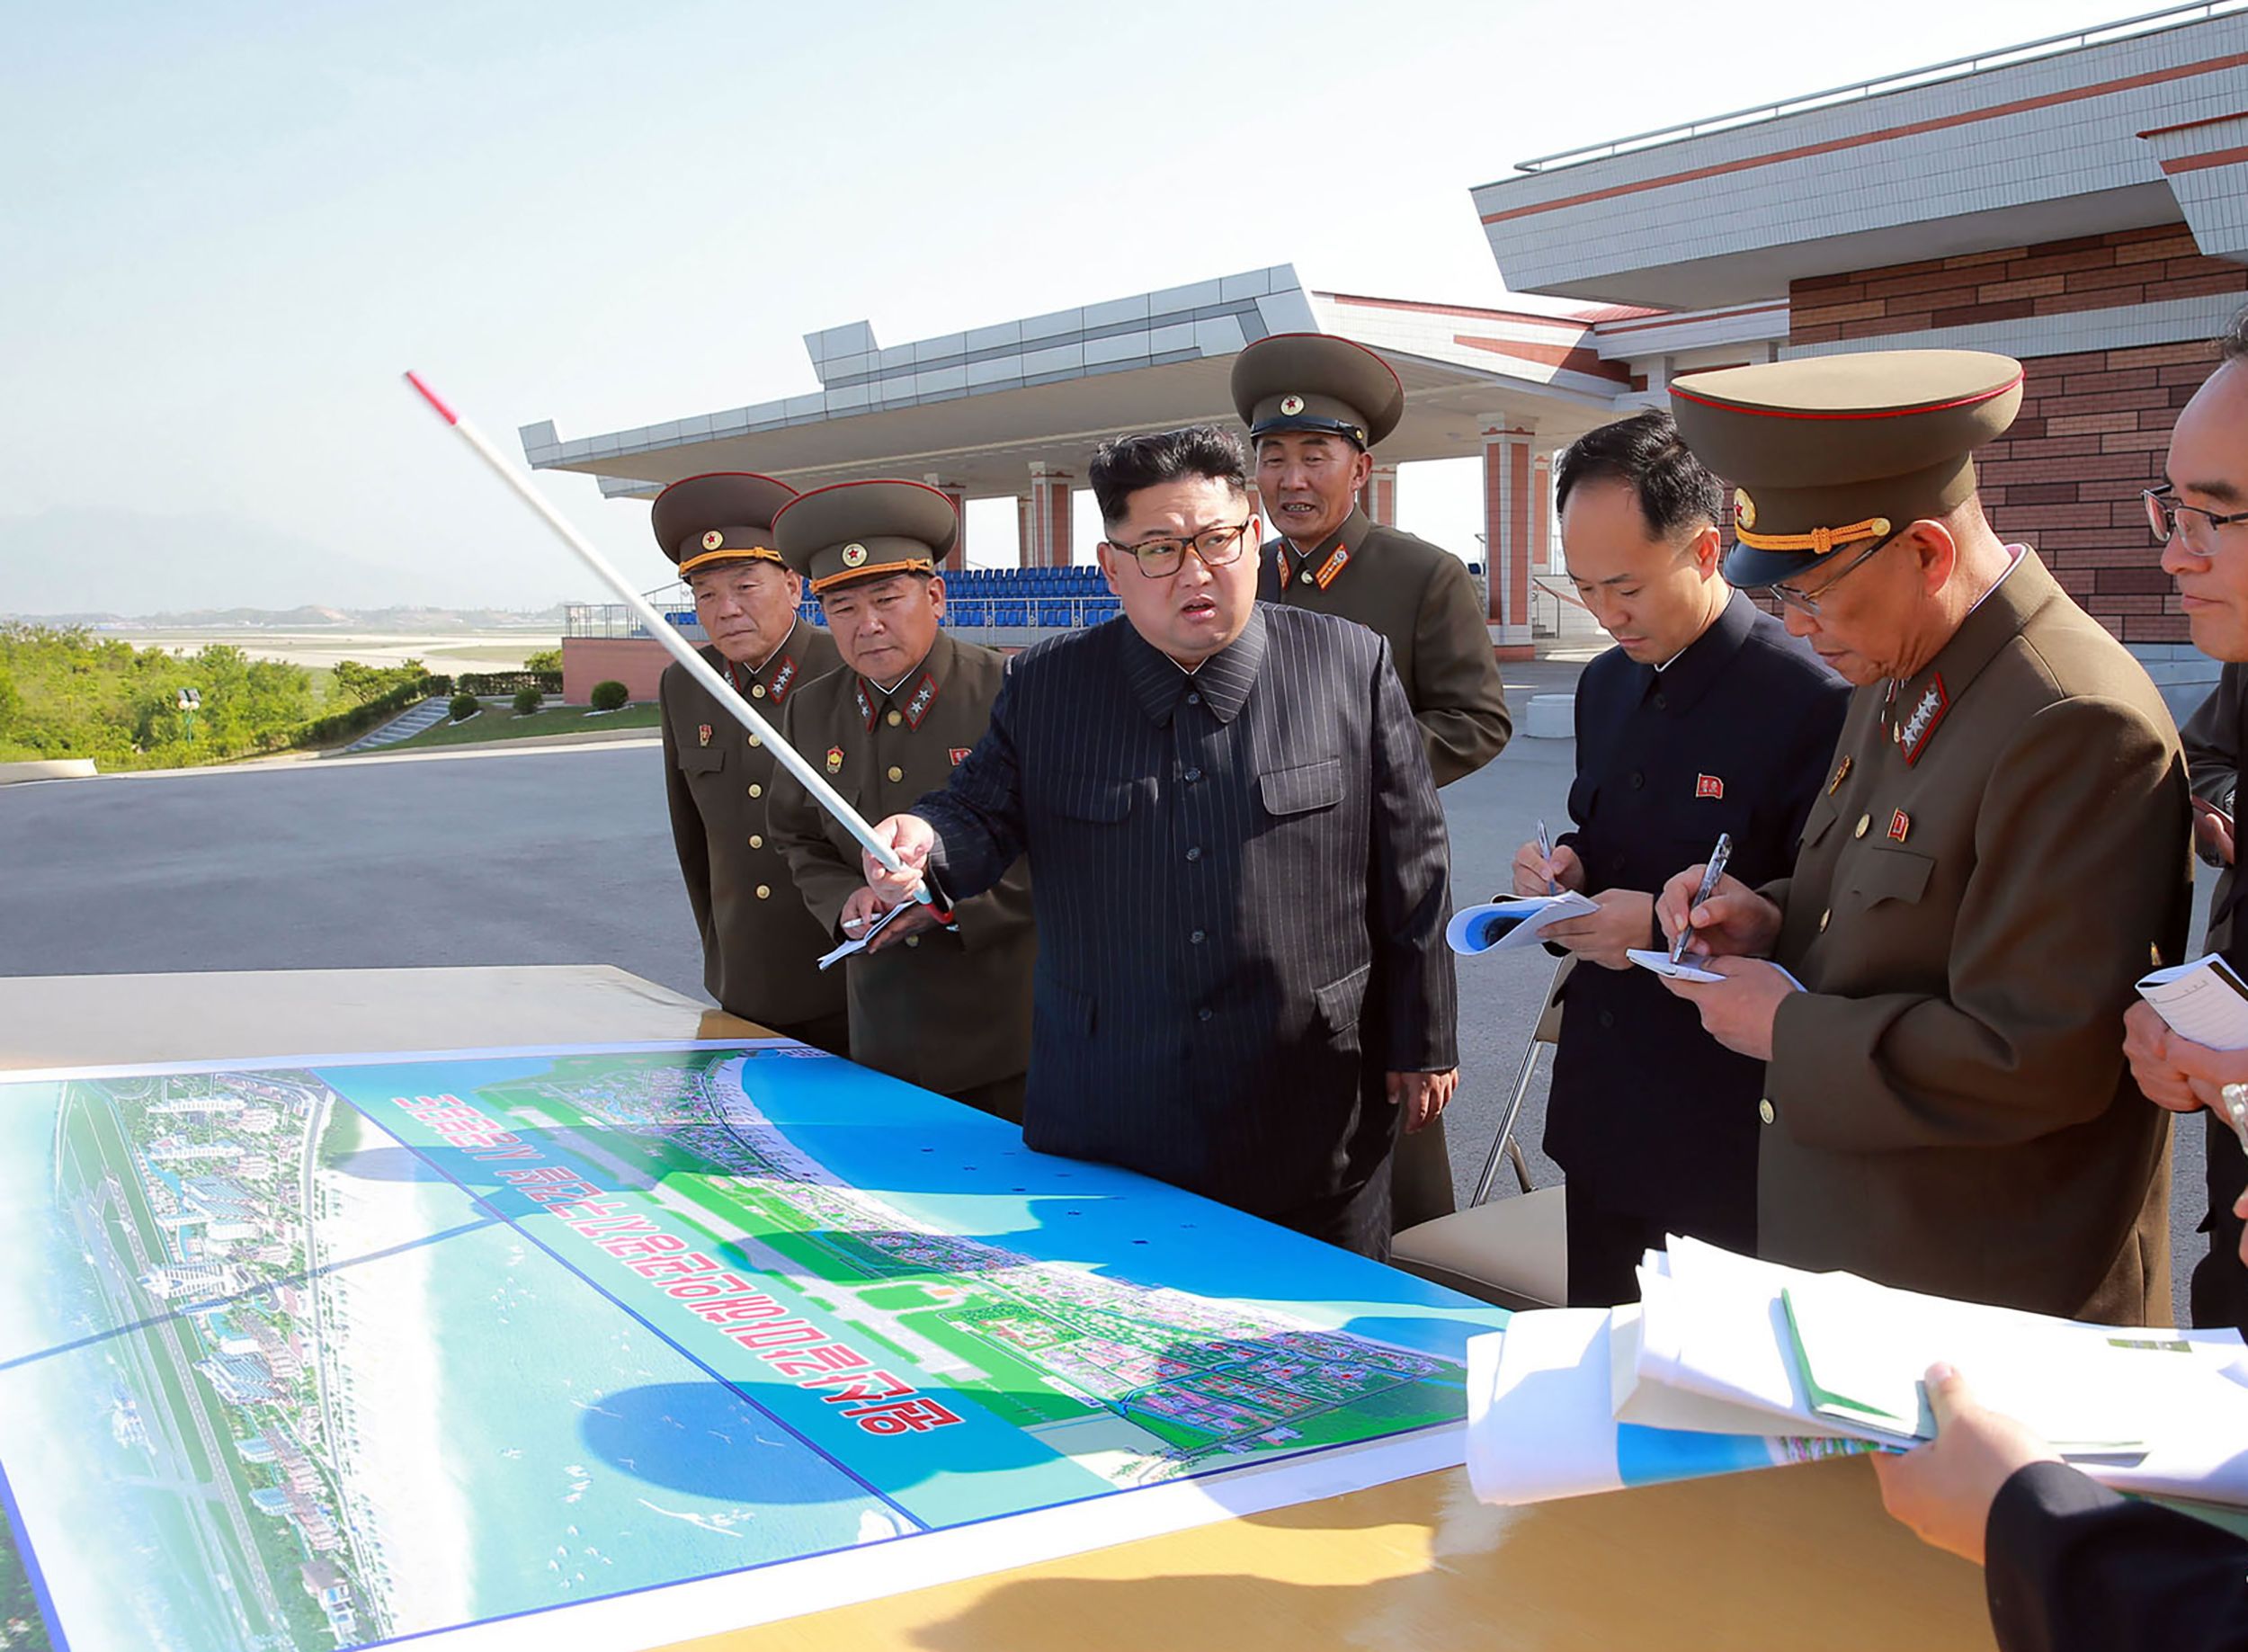 كيم جونج أون زعيم كوريا الشمالية